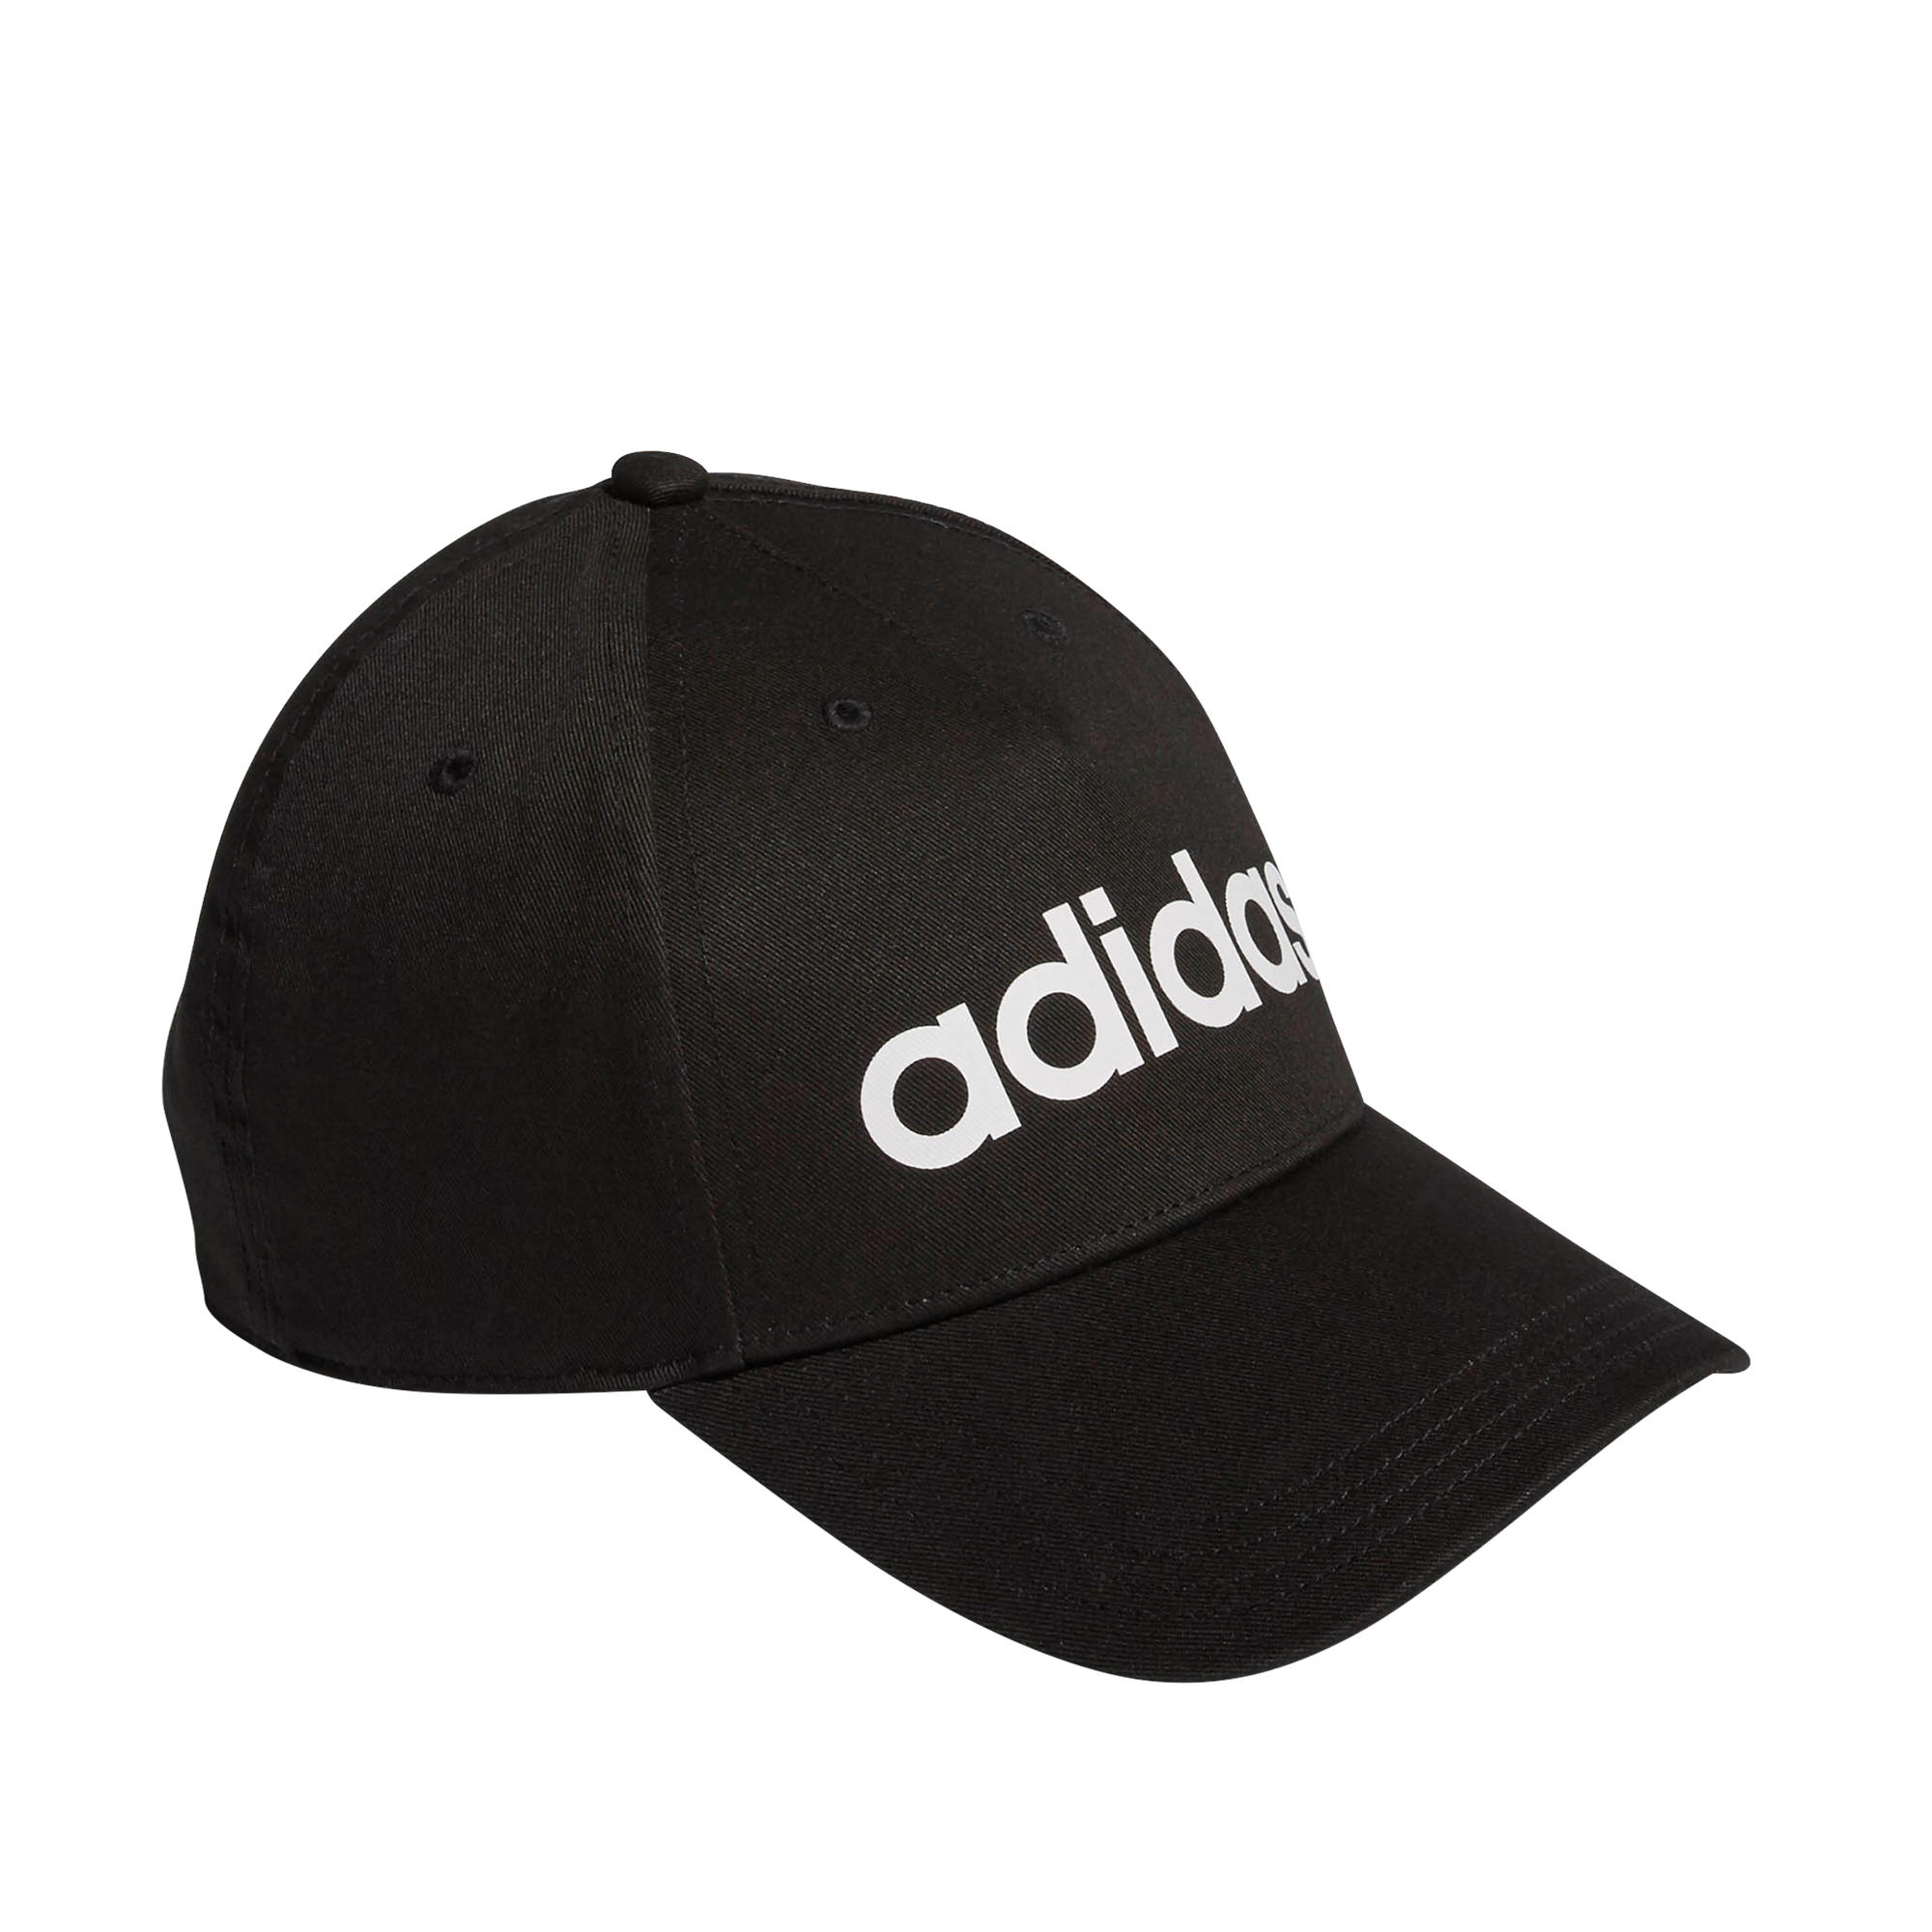 Cap schwarz mit weißem Adidas-Logo